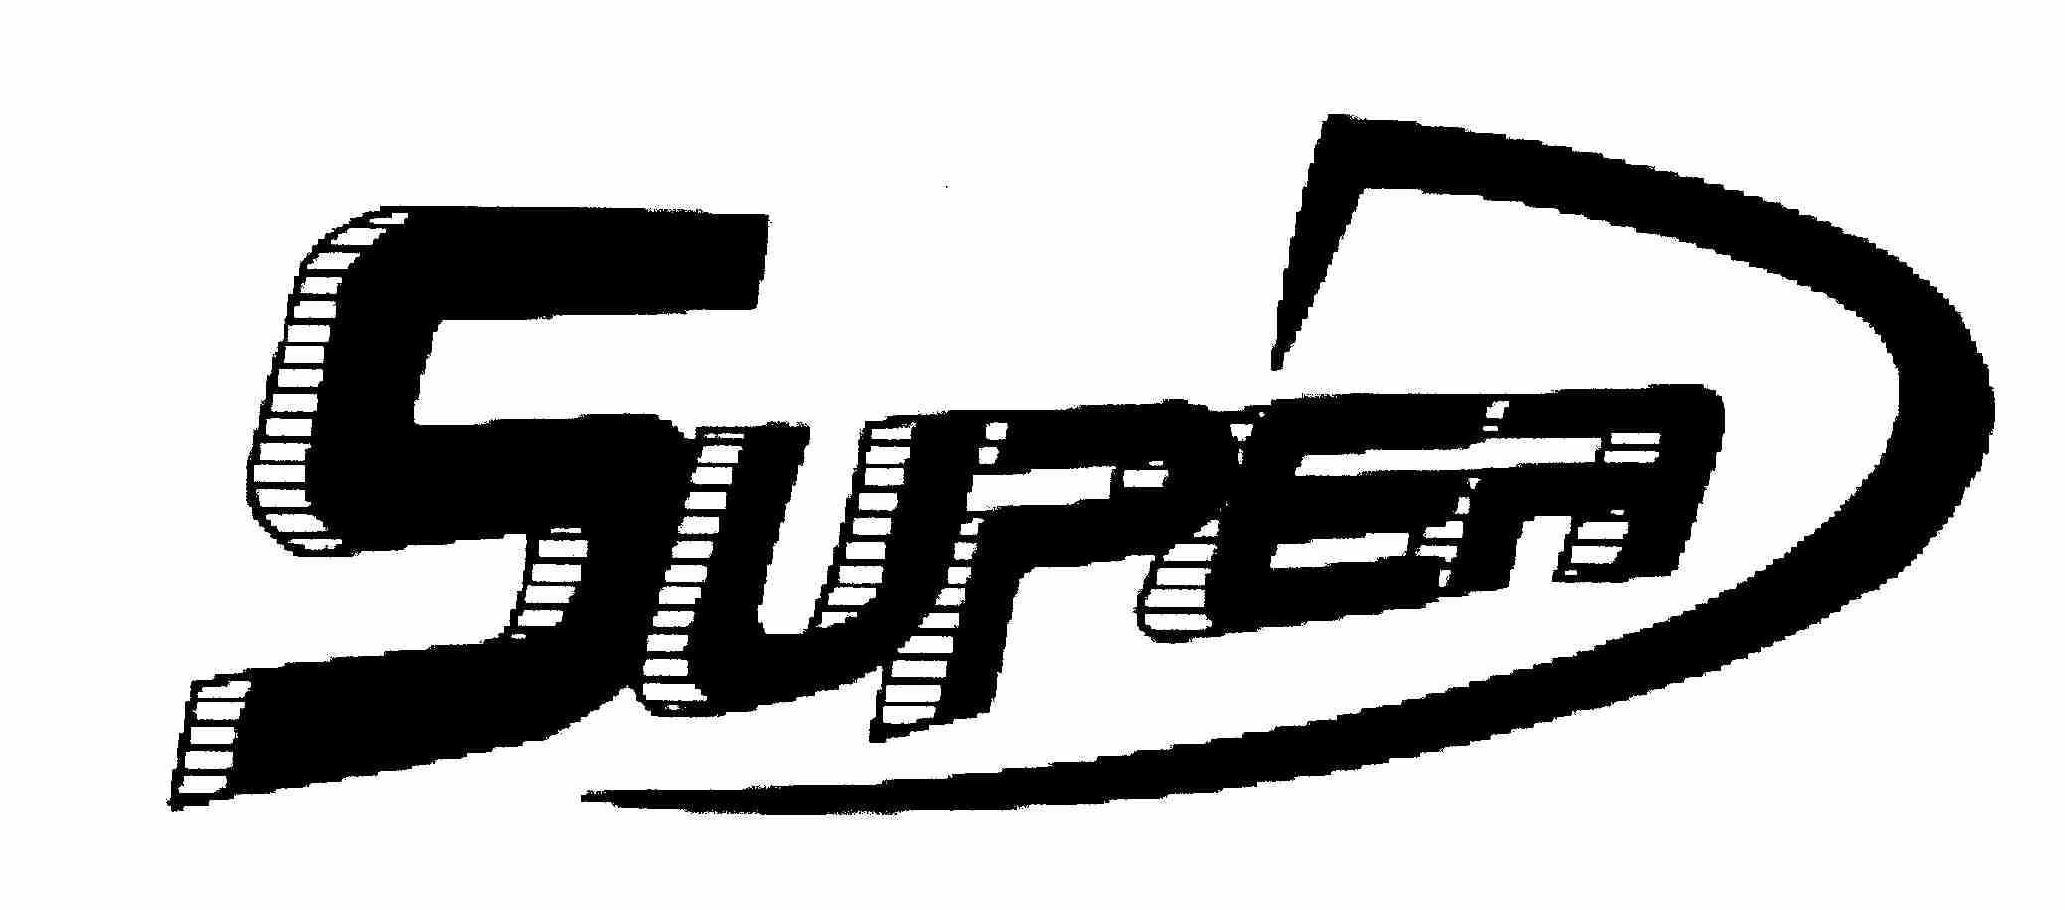 SUPER D